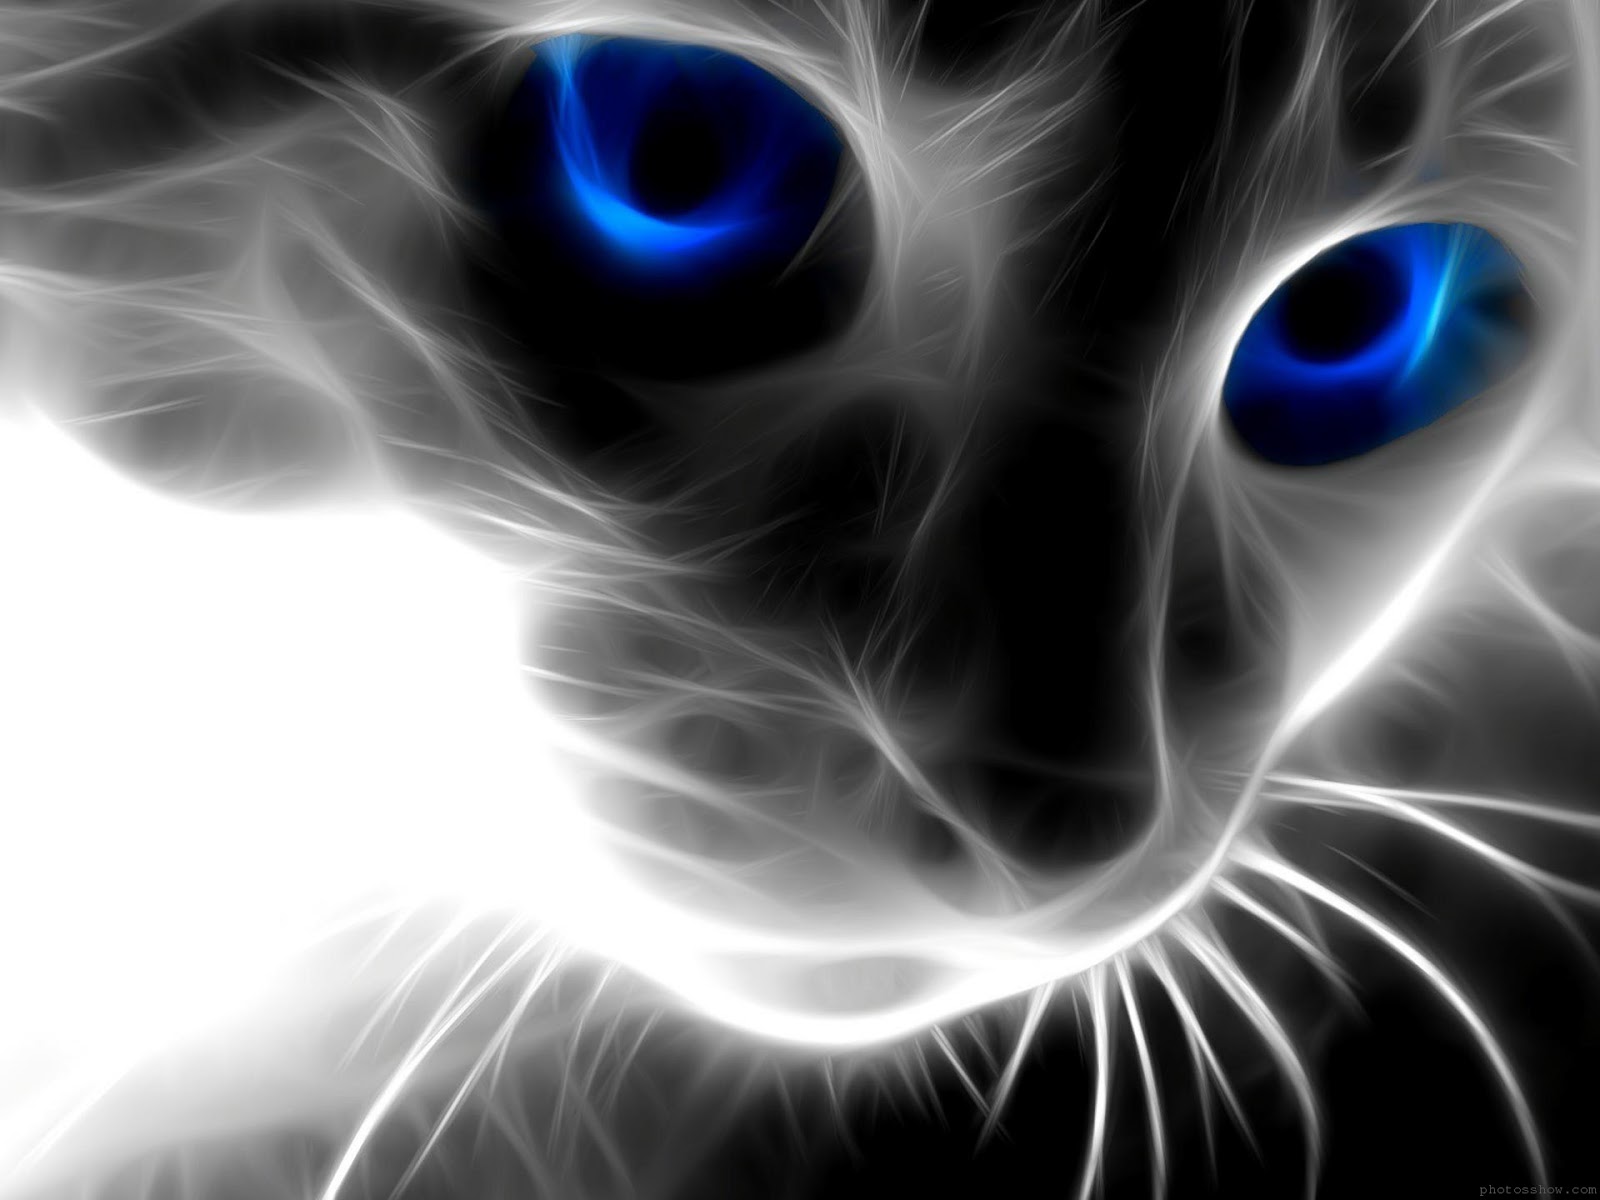 Black cat with blue eyes hd wallpaper 1080 1080 hd wallpapersjpg